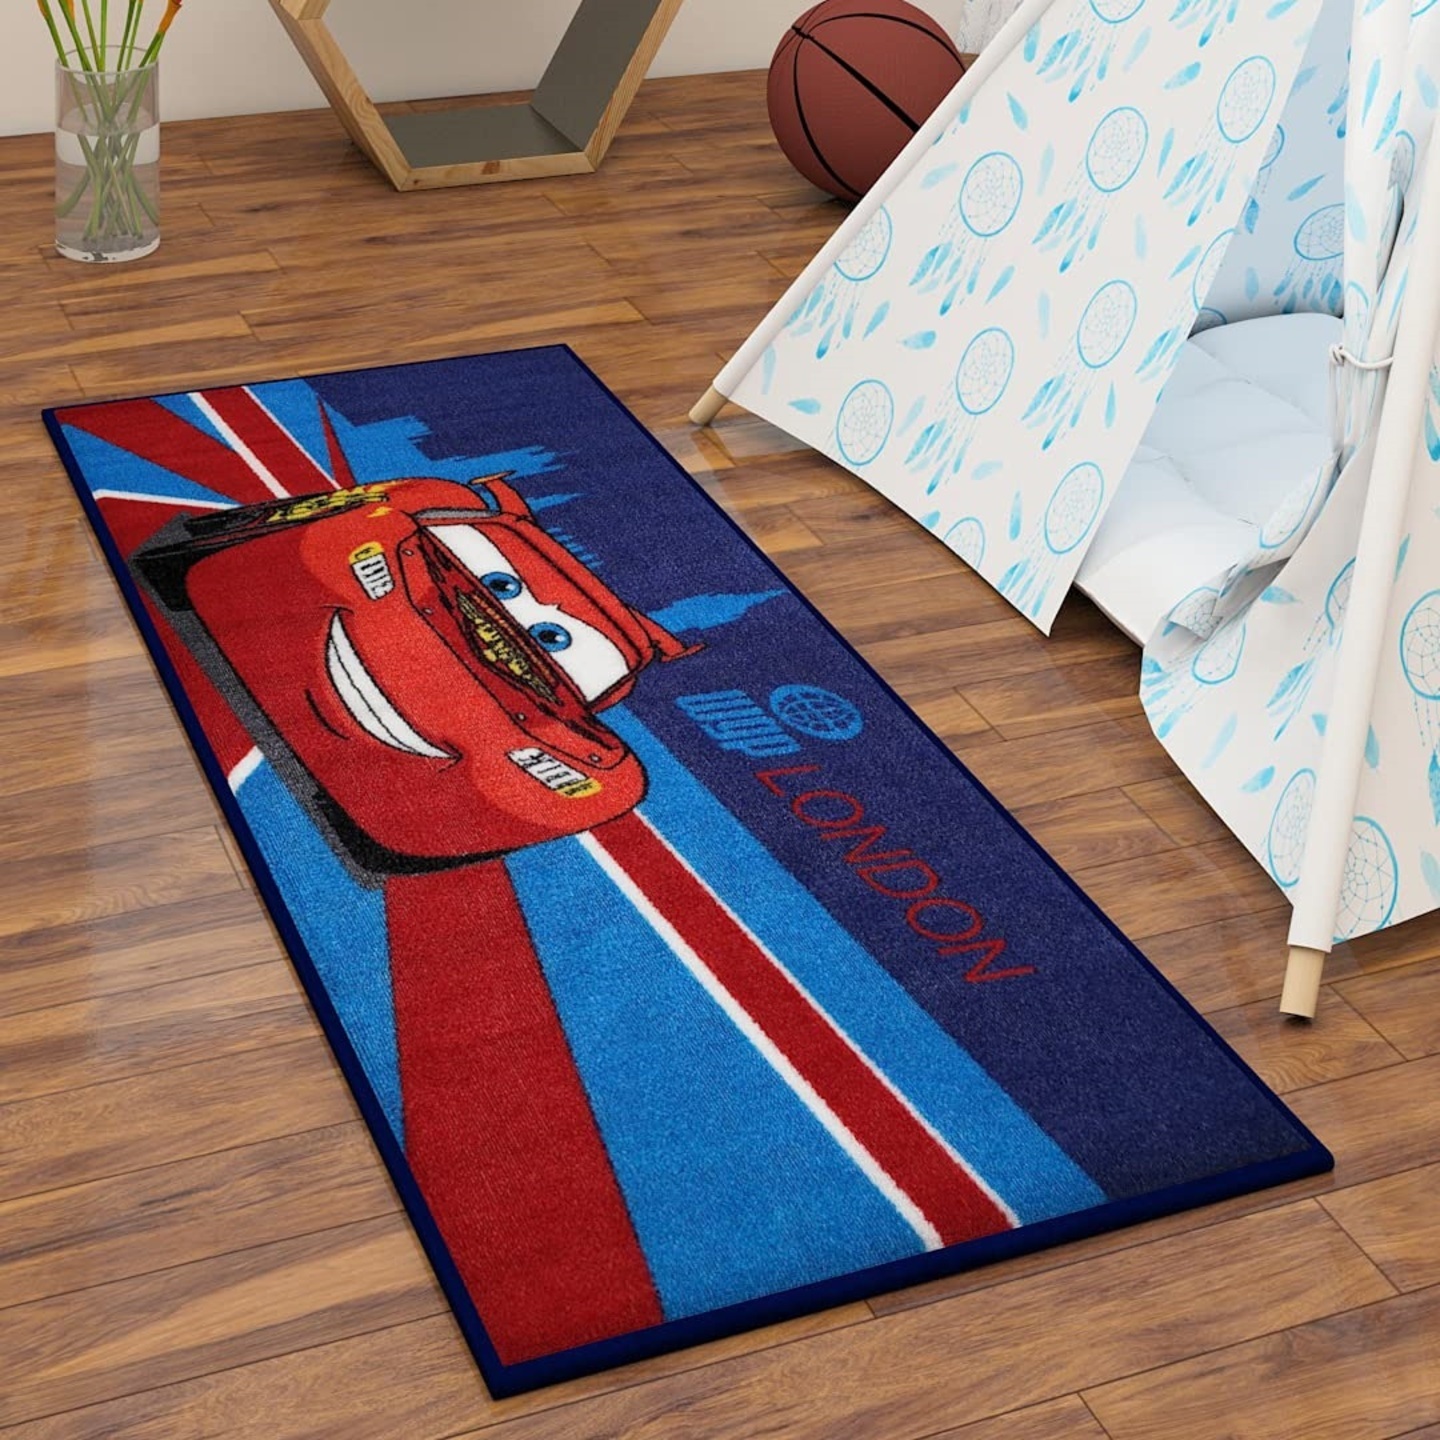 Disney Kids Runner Carpet (2 feet x 4.5 feet) - 500 GSM